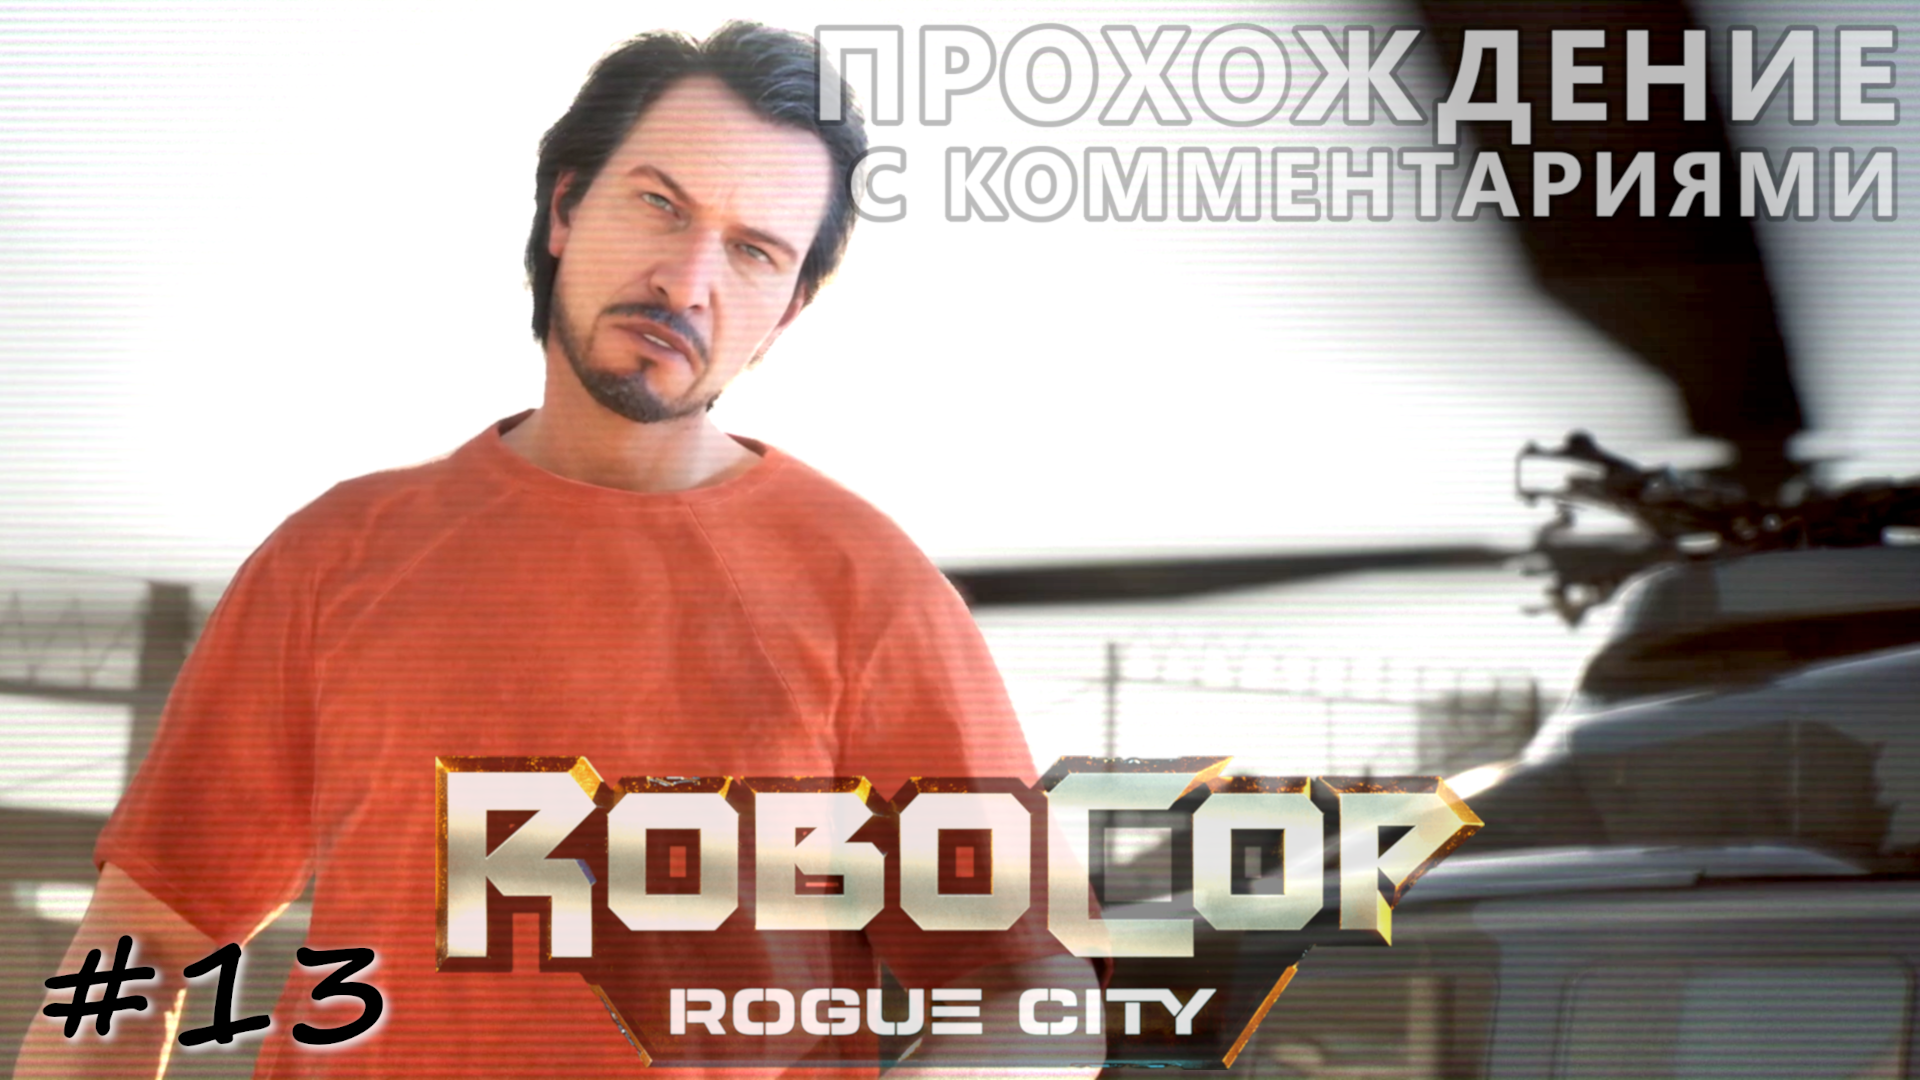 Бунт в тюрьме. Побег главного злодея - #13 - RoboCop Rogue City